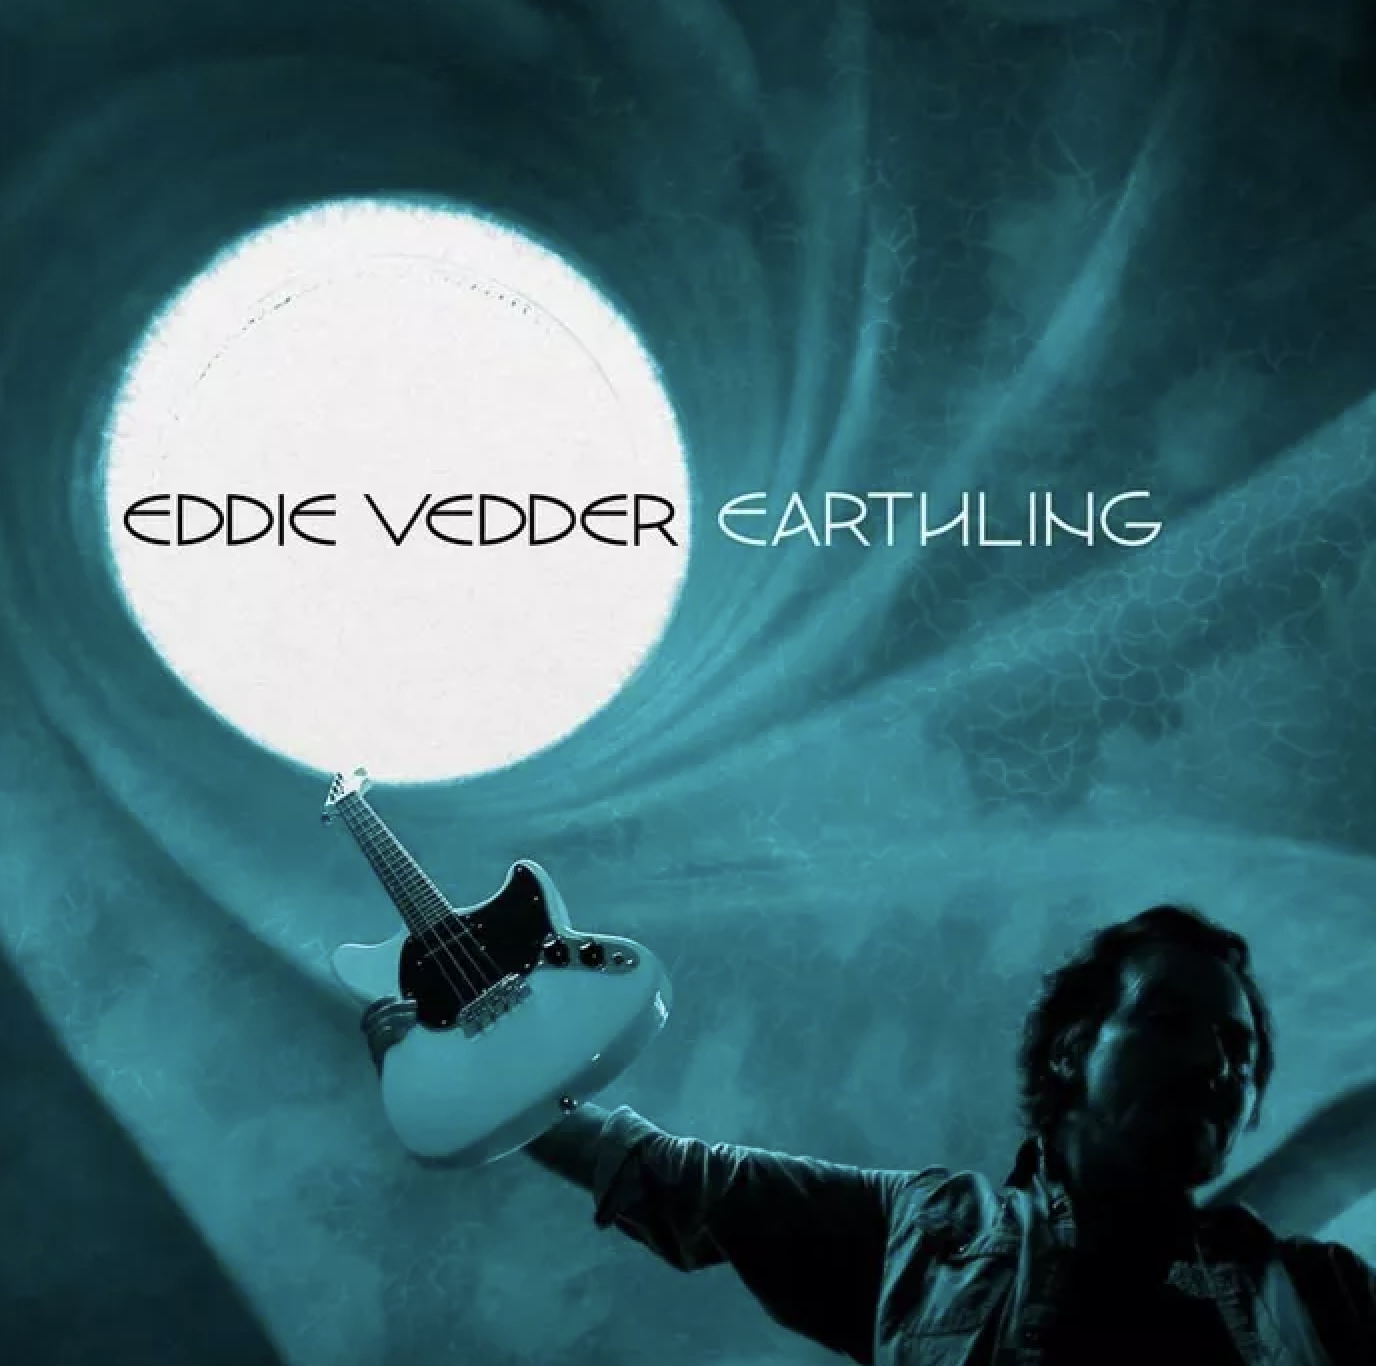 EDDIE VEDDER terzo singolo ad anticipare il nuovo album "Earthling"